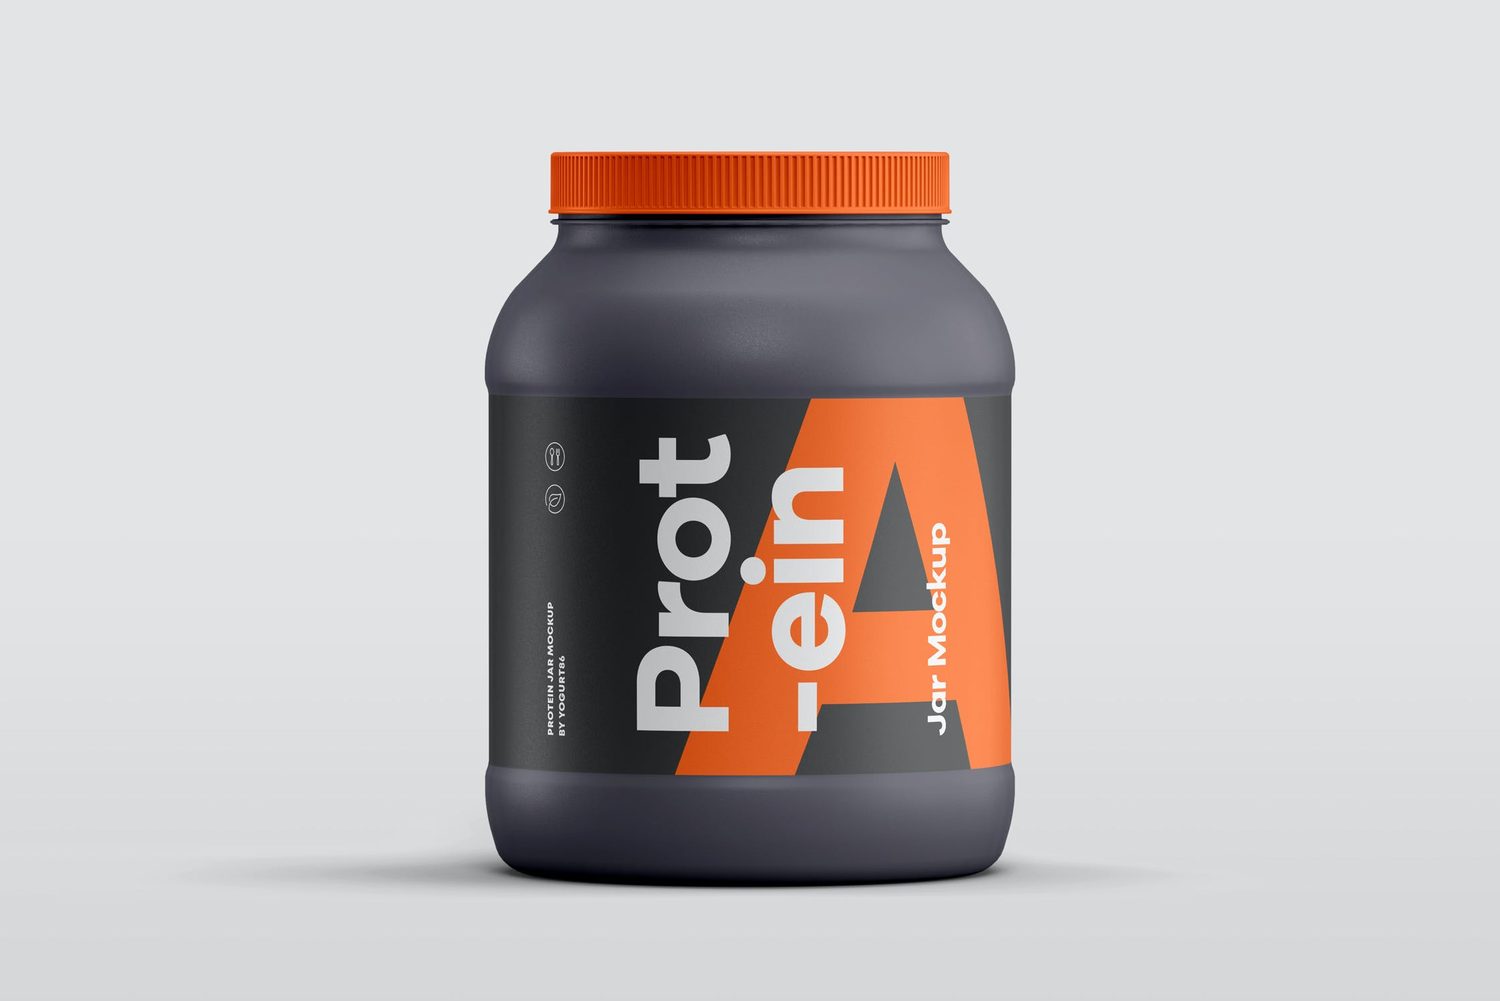 4756 健身锻炼蛋白质粉密封罐产品包装设计作品贴图ps样机素材展示模板 Protein Jar Mockup@GOOODME.COM